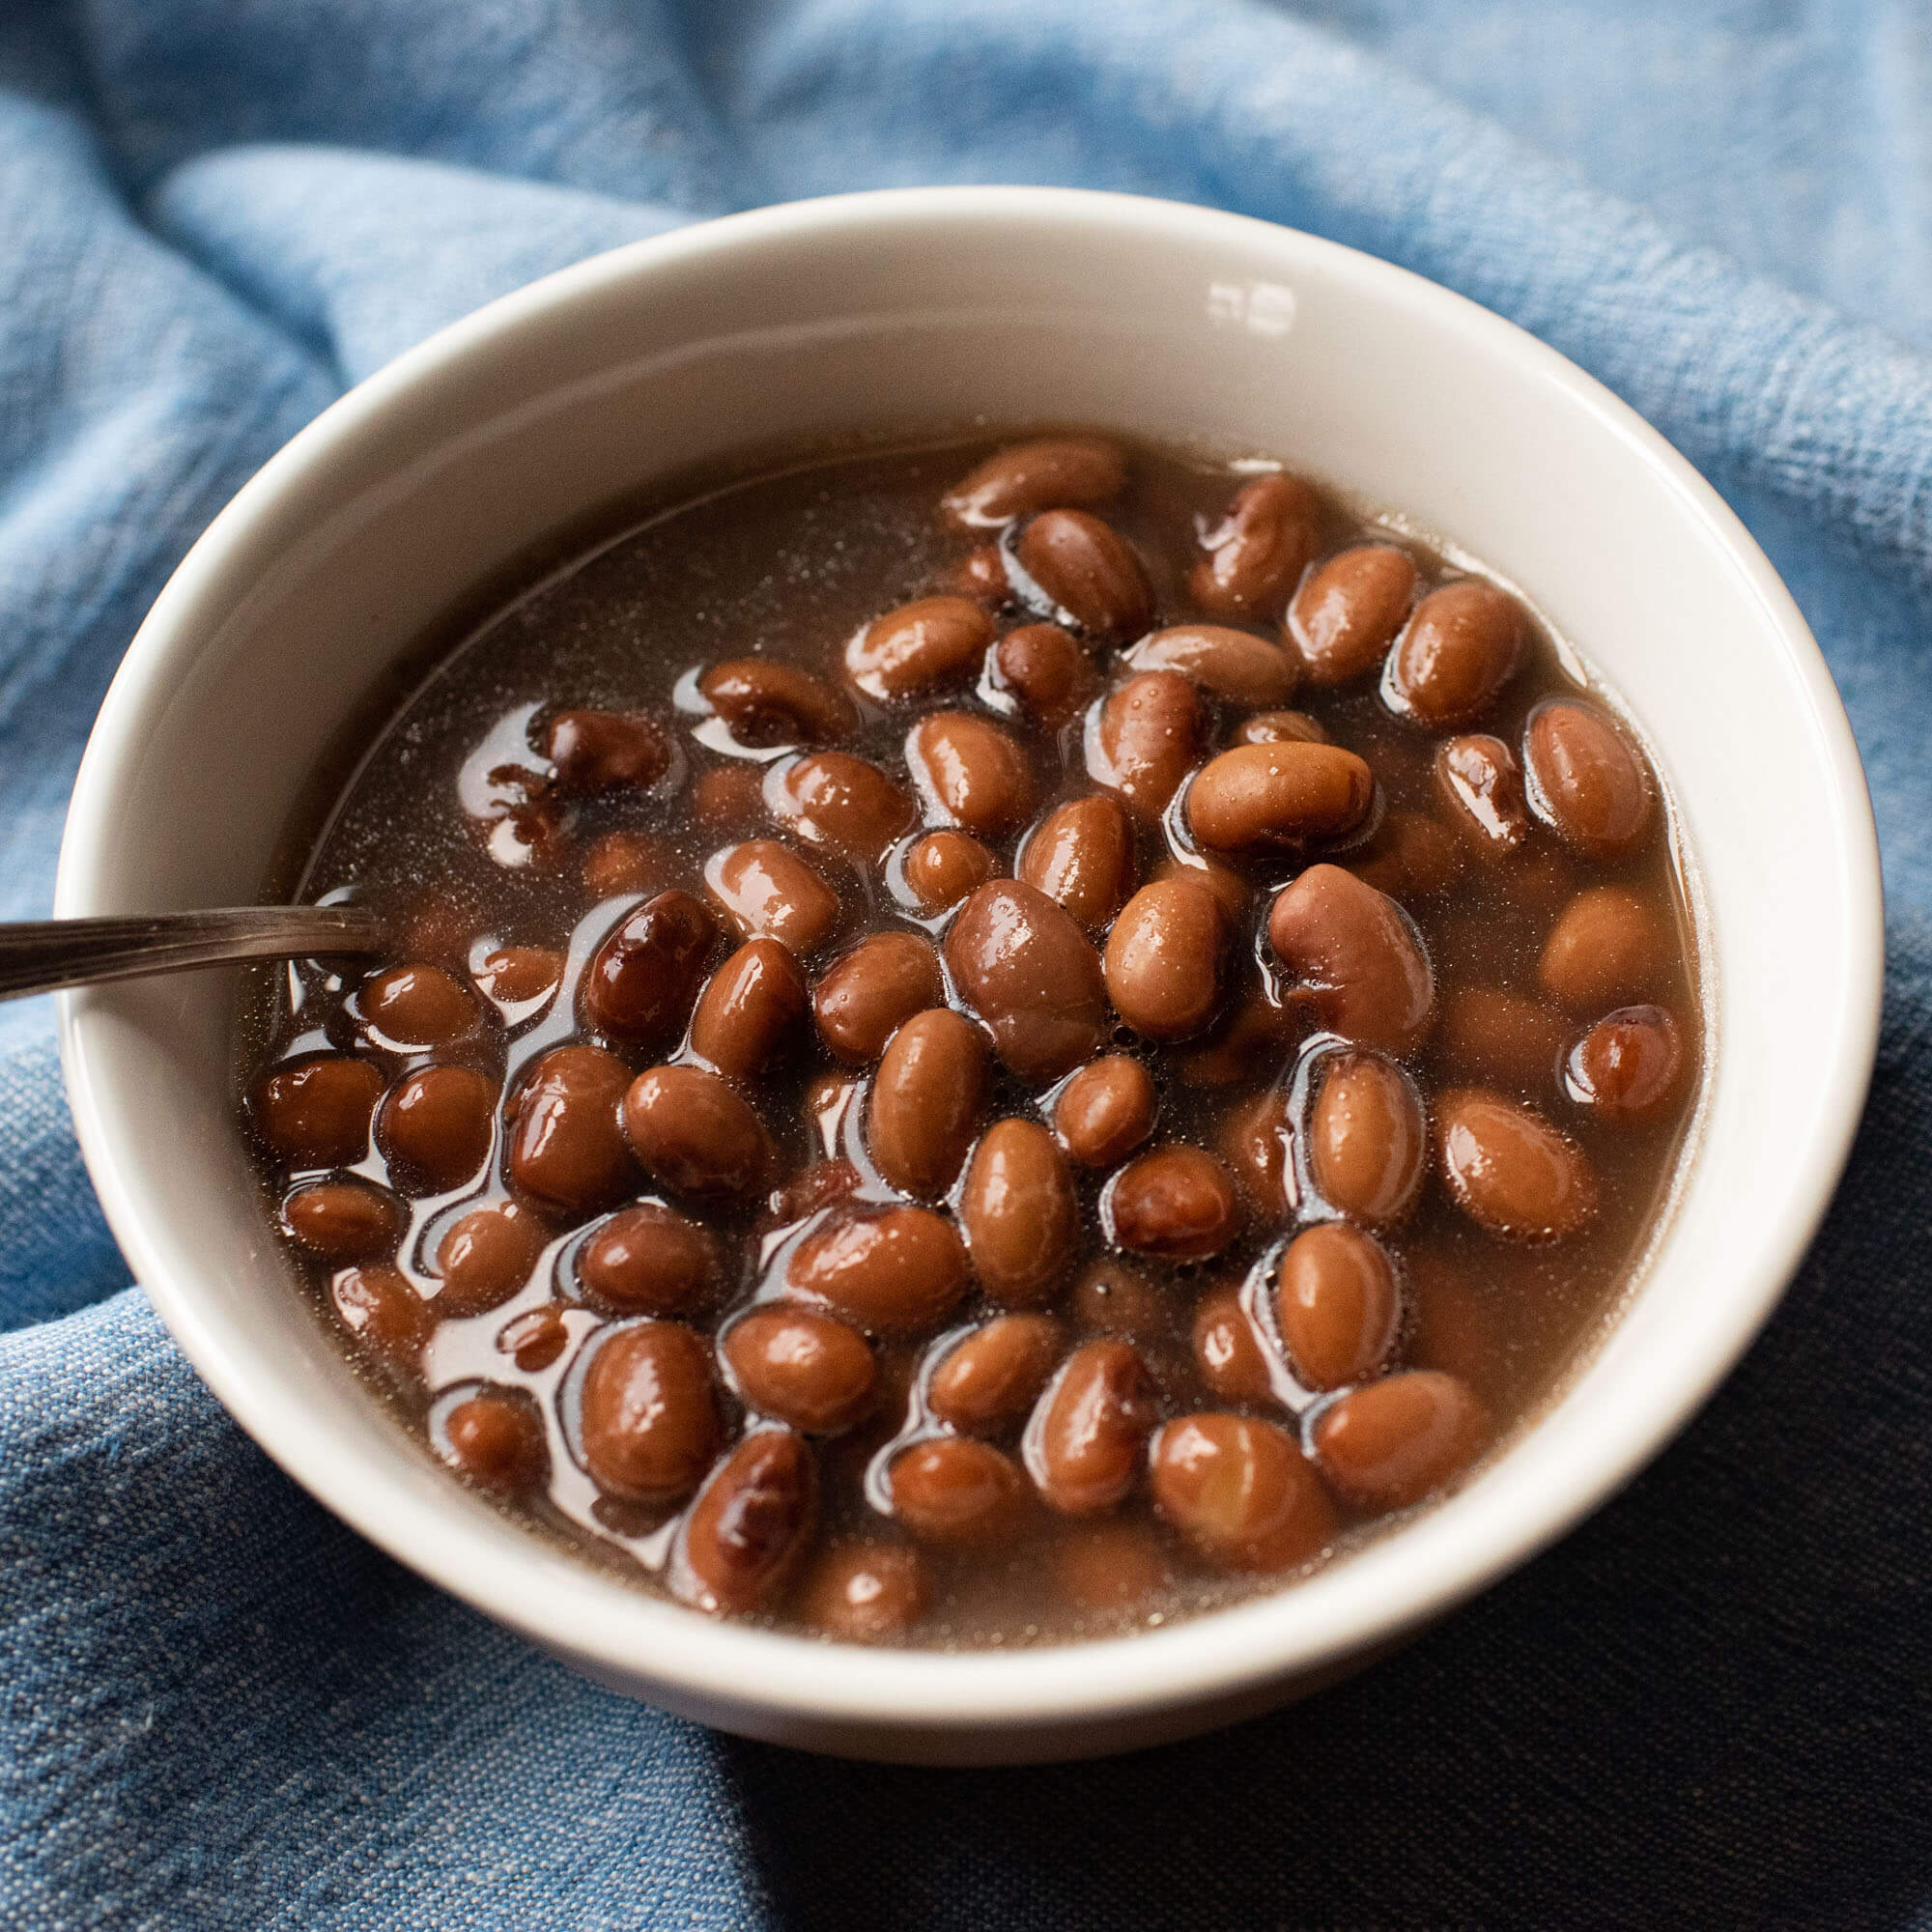 Primary Beans brothy Organic Ojo de Cabra beans